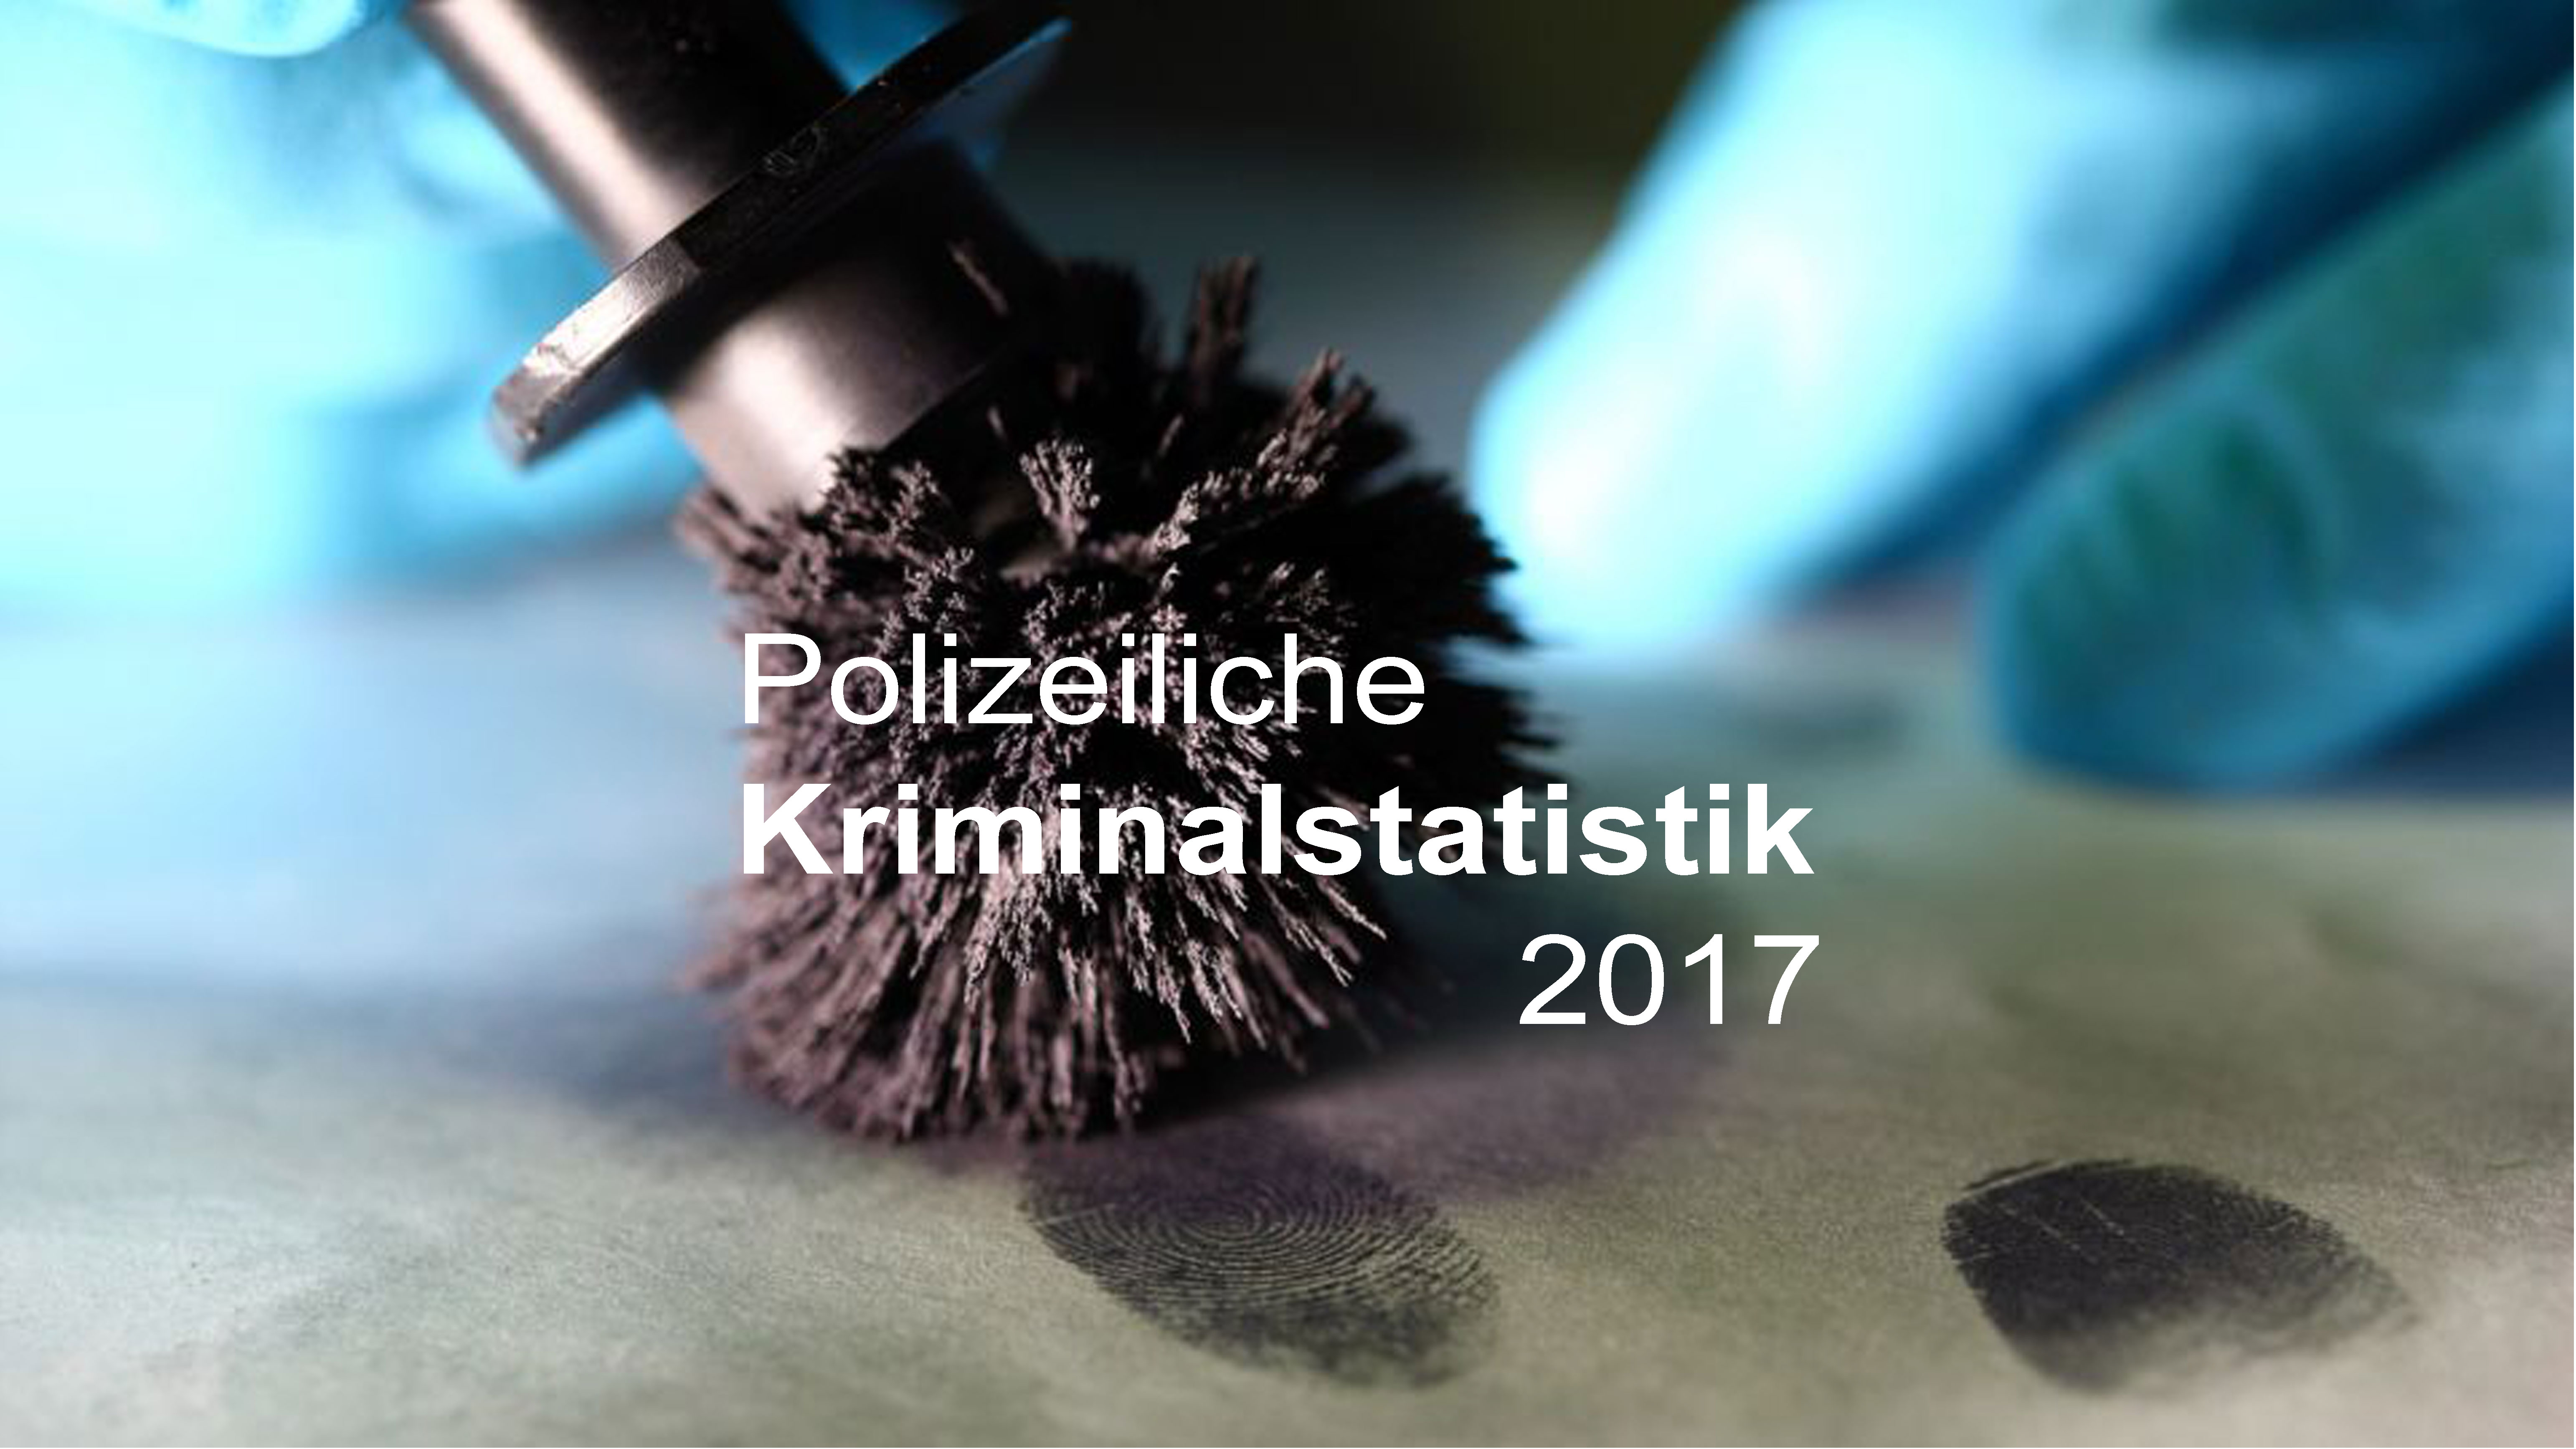 Polizeiliche Kriminalstatistik 2017